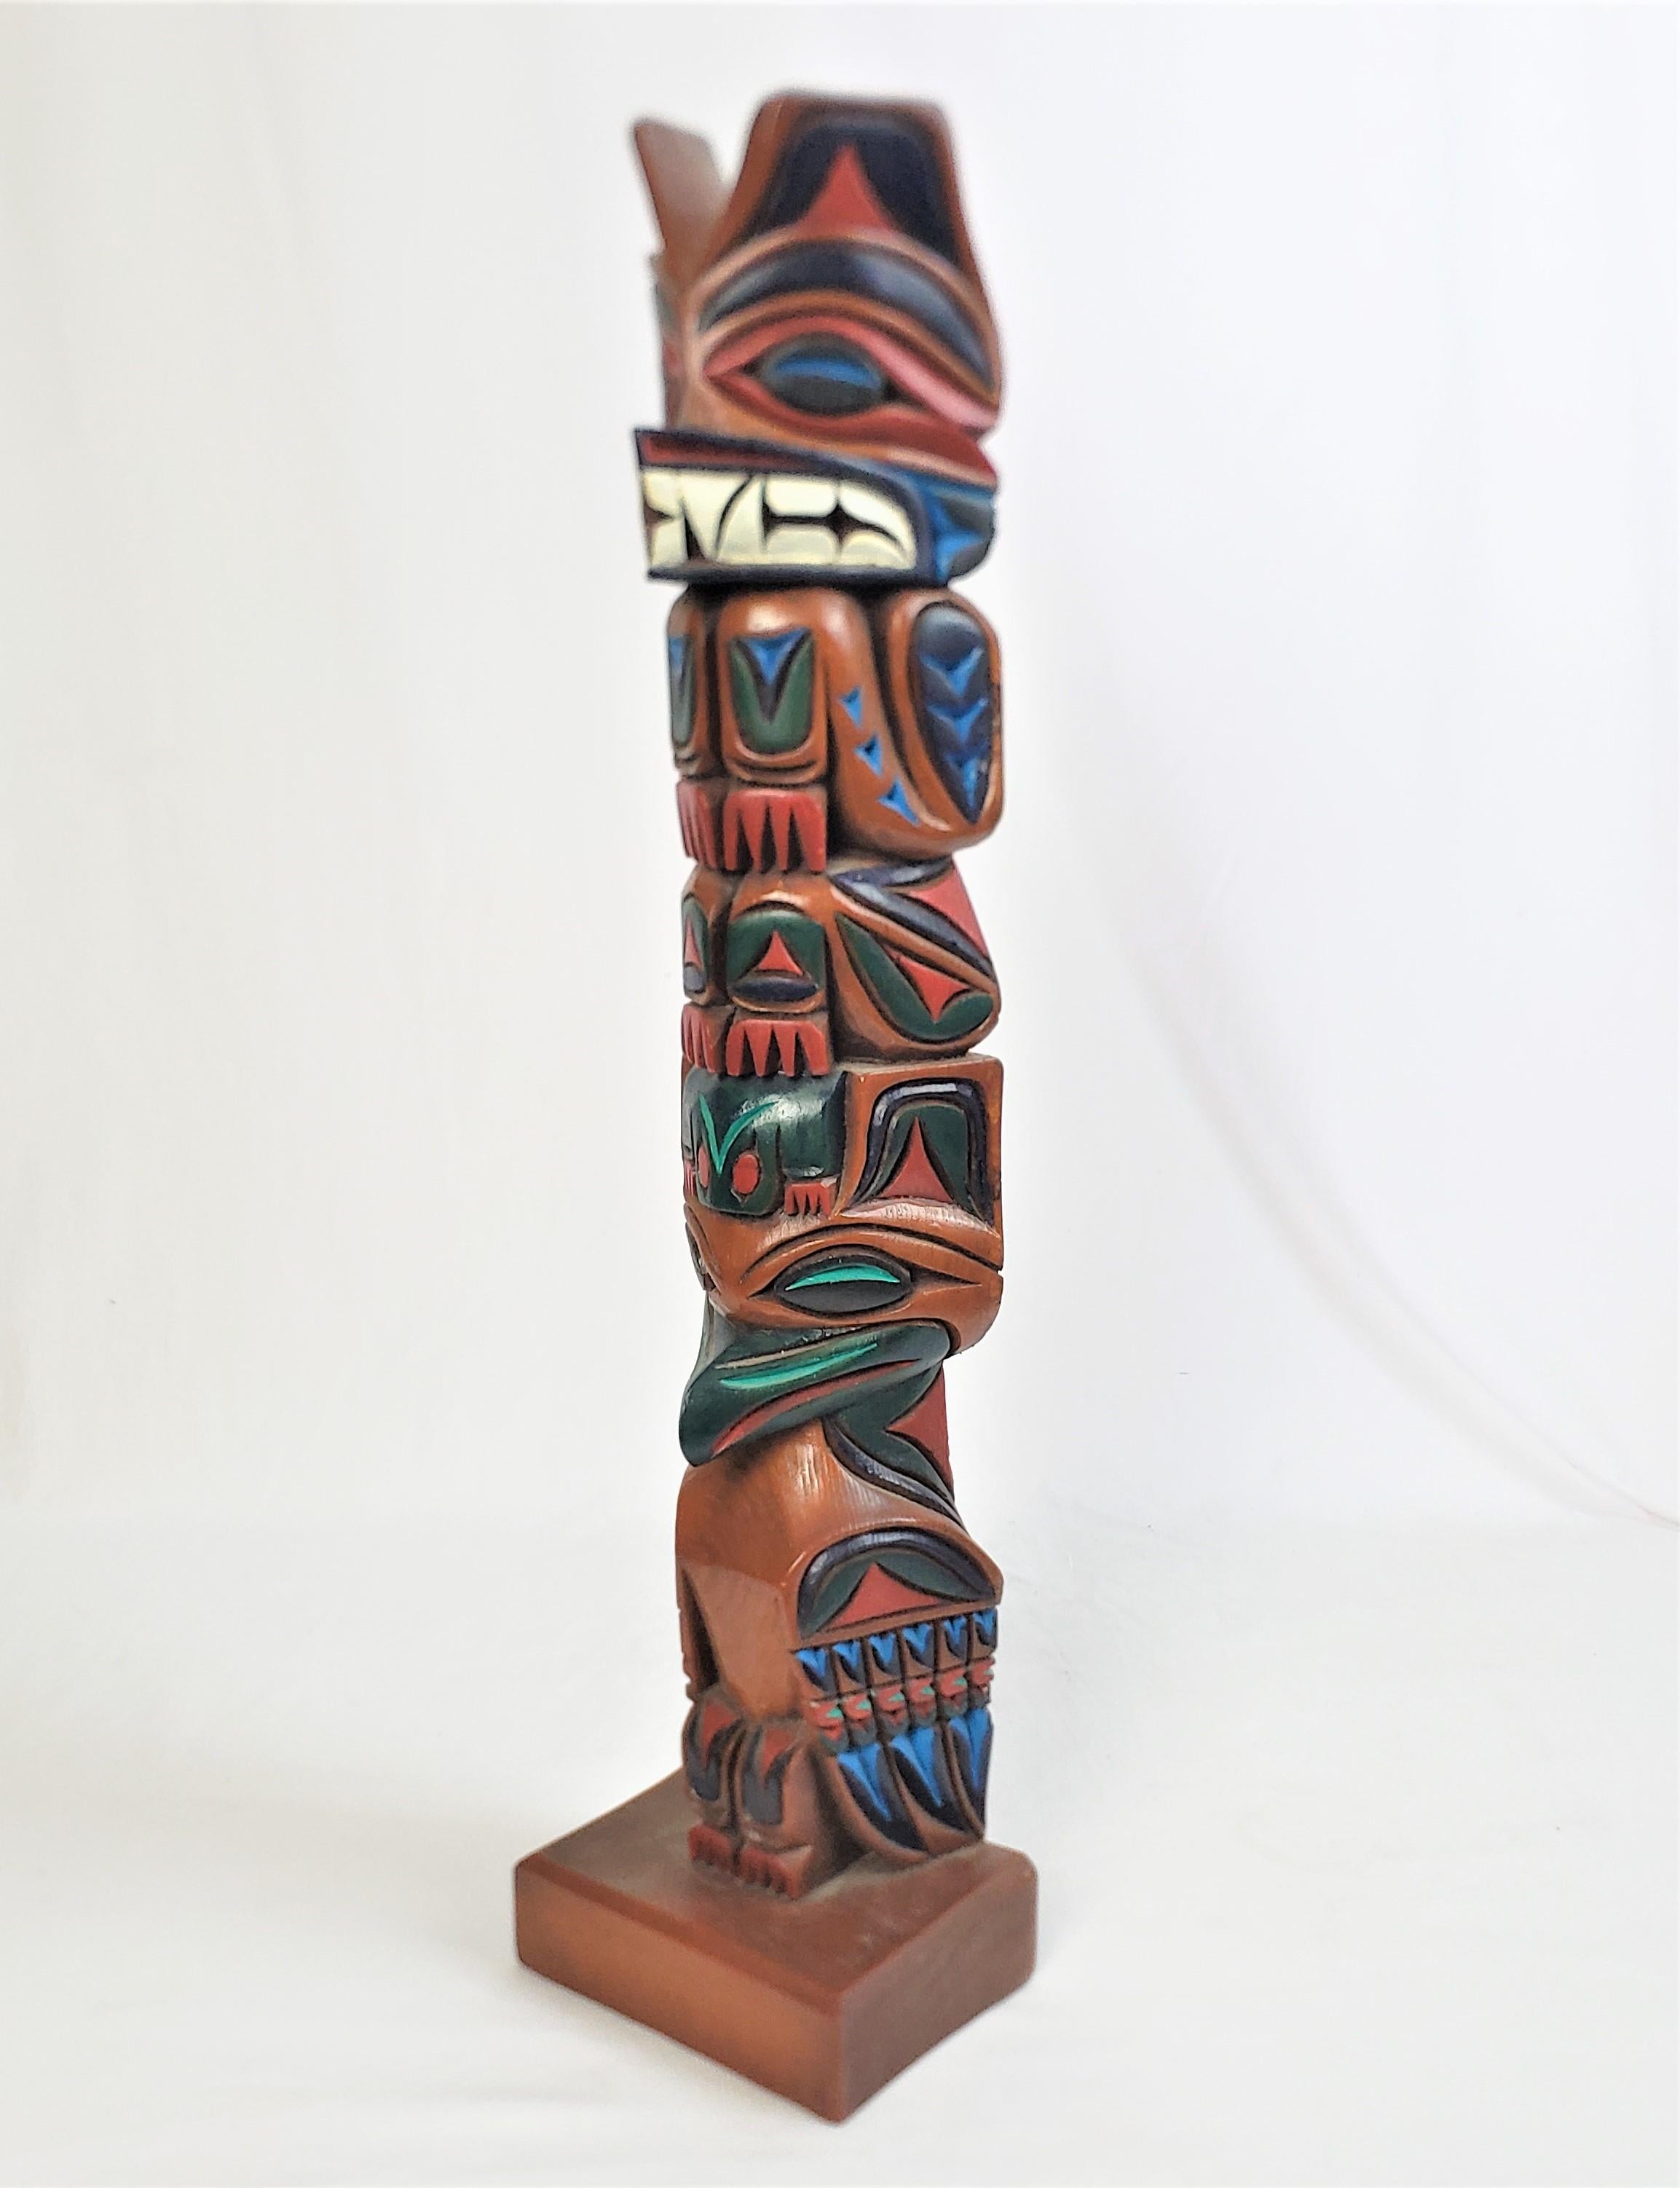 Dieser geschnitzte und polychrom bemalte Totempfahl ist von einem unbekannten Künstler signiert und stammt aus den Vereinigten Staaten. Er wurde 1985 im Haida-Stil der Westküste angefertigt. Das Totem besteht aus Zedernholz und ist mit stilisierten